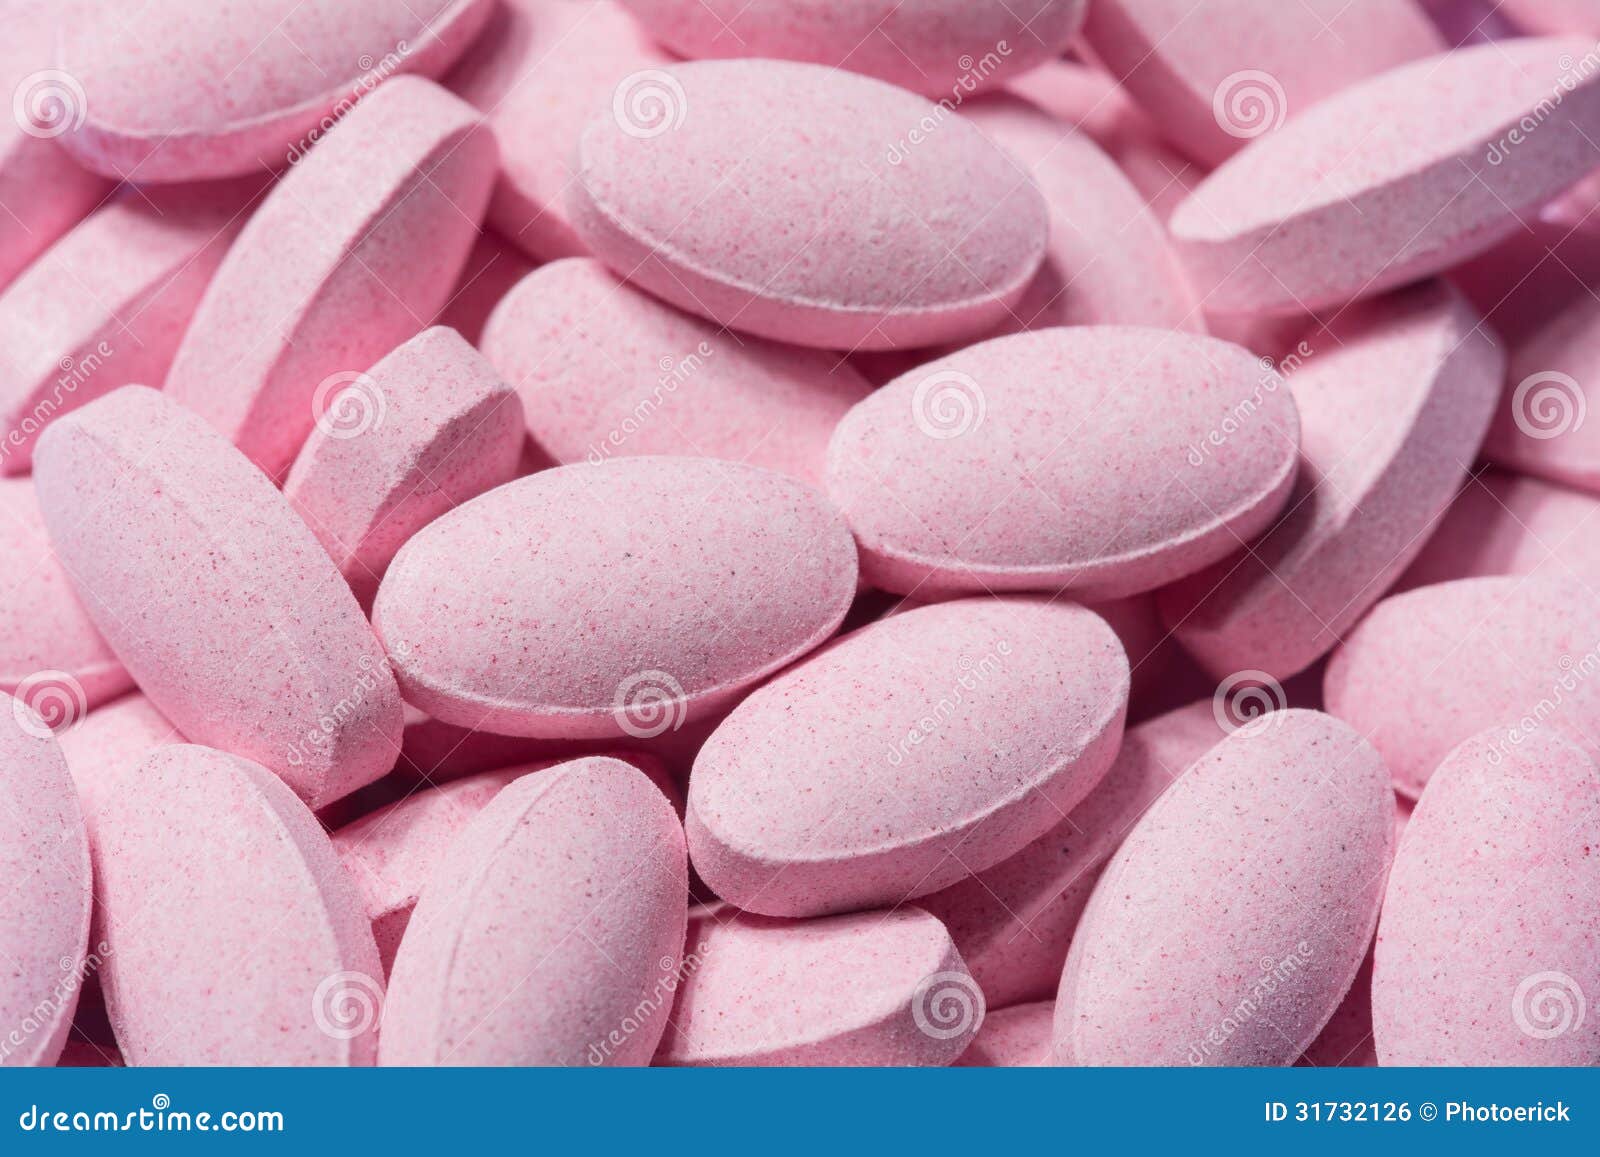 Розовые таблетки от температуры. Розовые таблетки. Розовые таблетки обезболивающие. Таблетки розового цвета название.